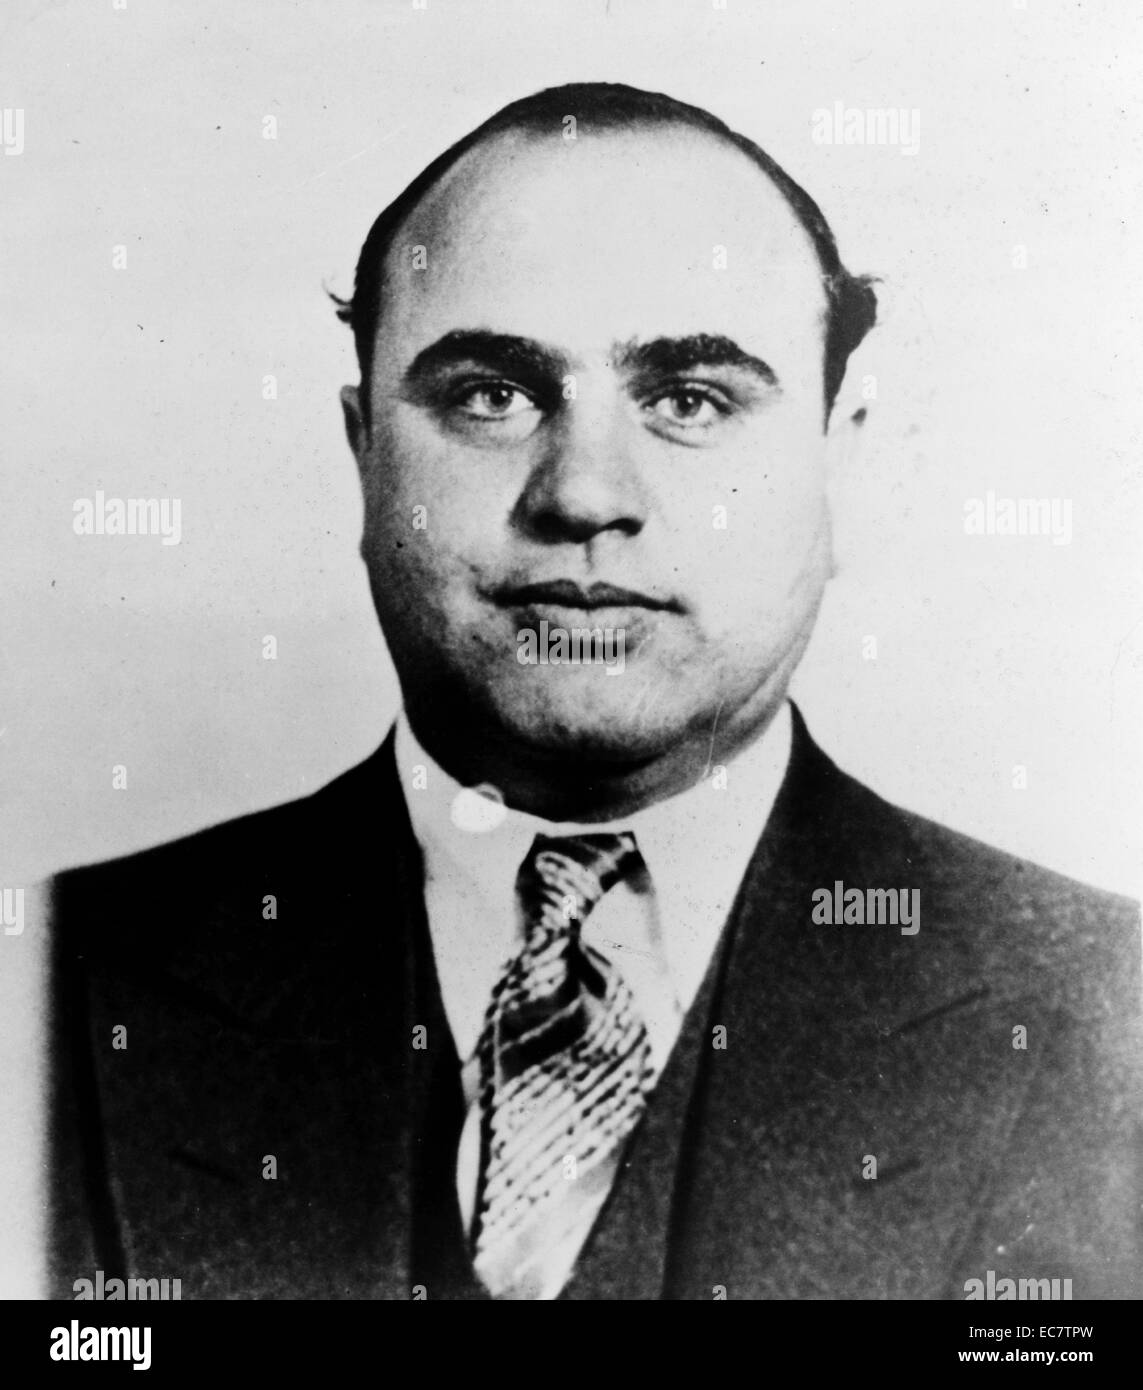 Mugshot di Al Capone. Alphonse Gabriel 'Al' Capone era un gangster americano che ha guidato un divieto-era criminale. Il Chicago Outfit, che successivamente divenne anche noto come 'Capones", è stata dedicata al contrabbando e bootlegging liquore, e altre attività illegali come la prostituzione, in Chicago dai primi anni 1920 al 1931. Foto Stock